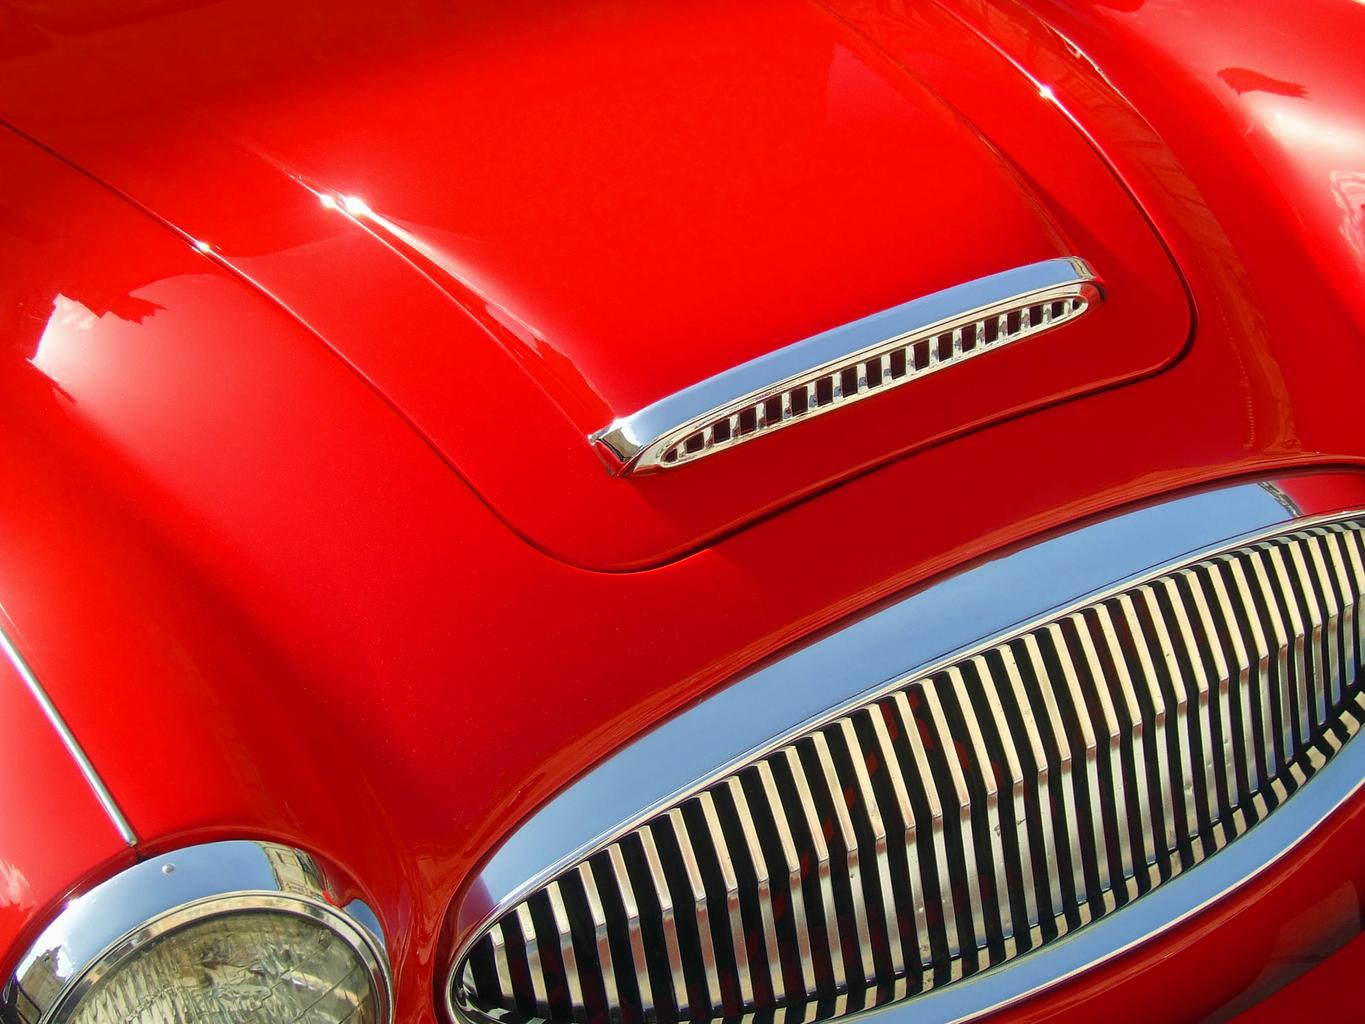 Capô de carro vermelho antigo. Imagem do conteúdo como tirar risco de carro.